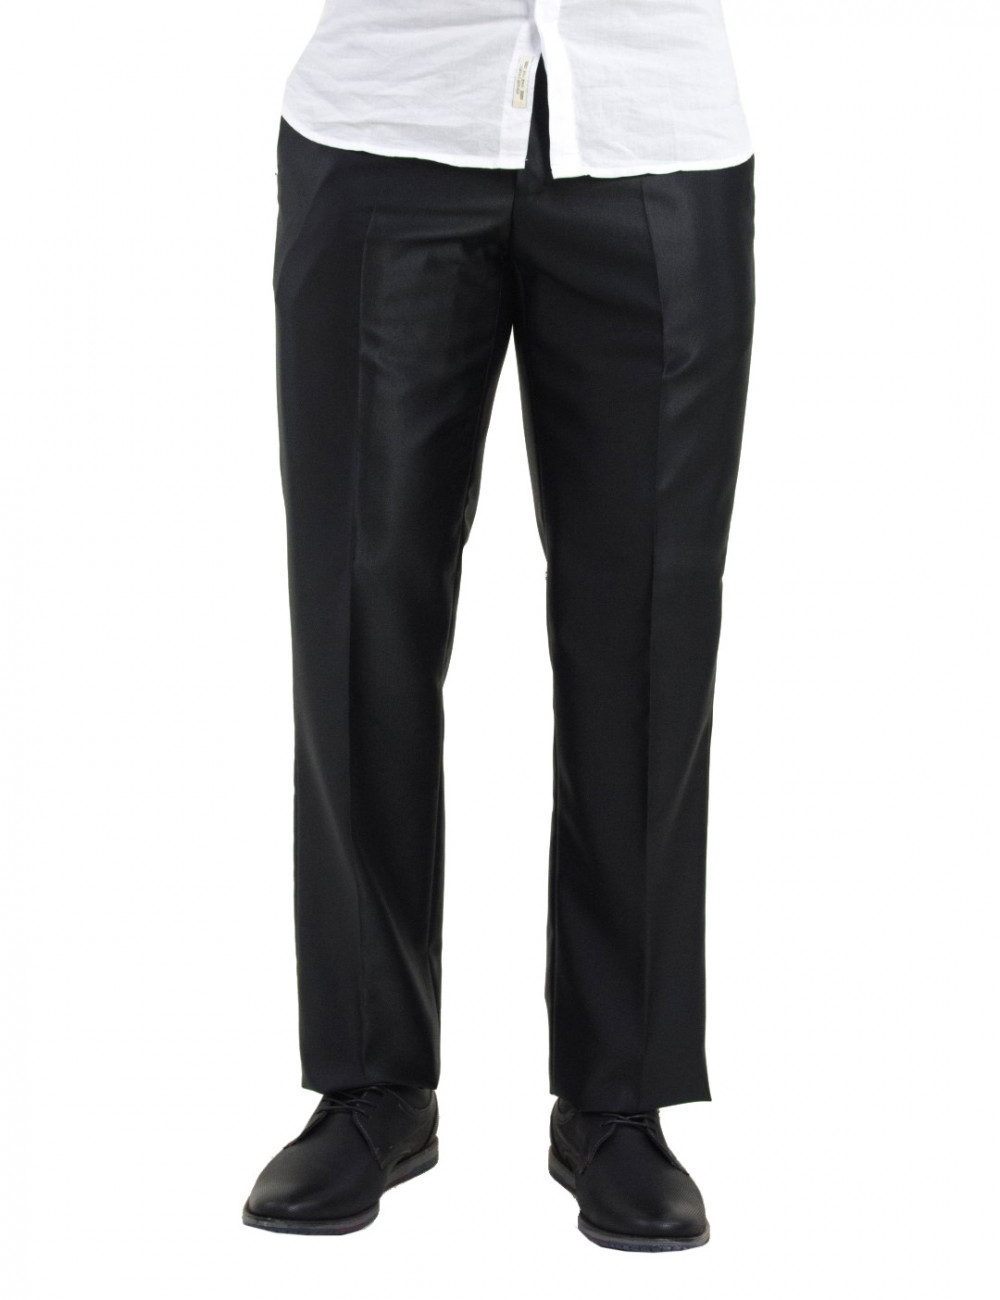 Ανδρικό μαύρο υφασμάτινο παντελόνι γυαλιστερό 5501000